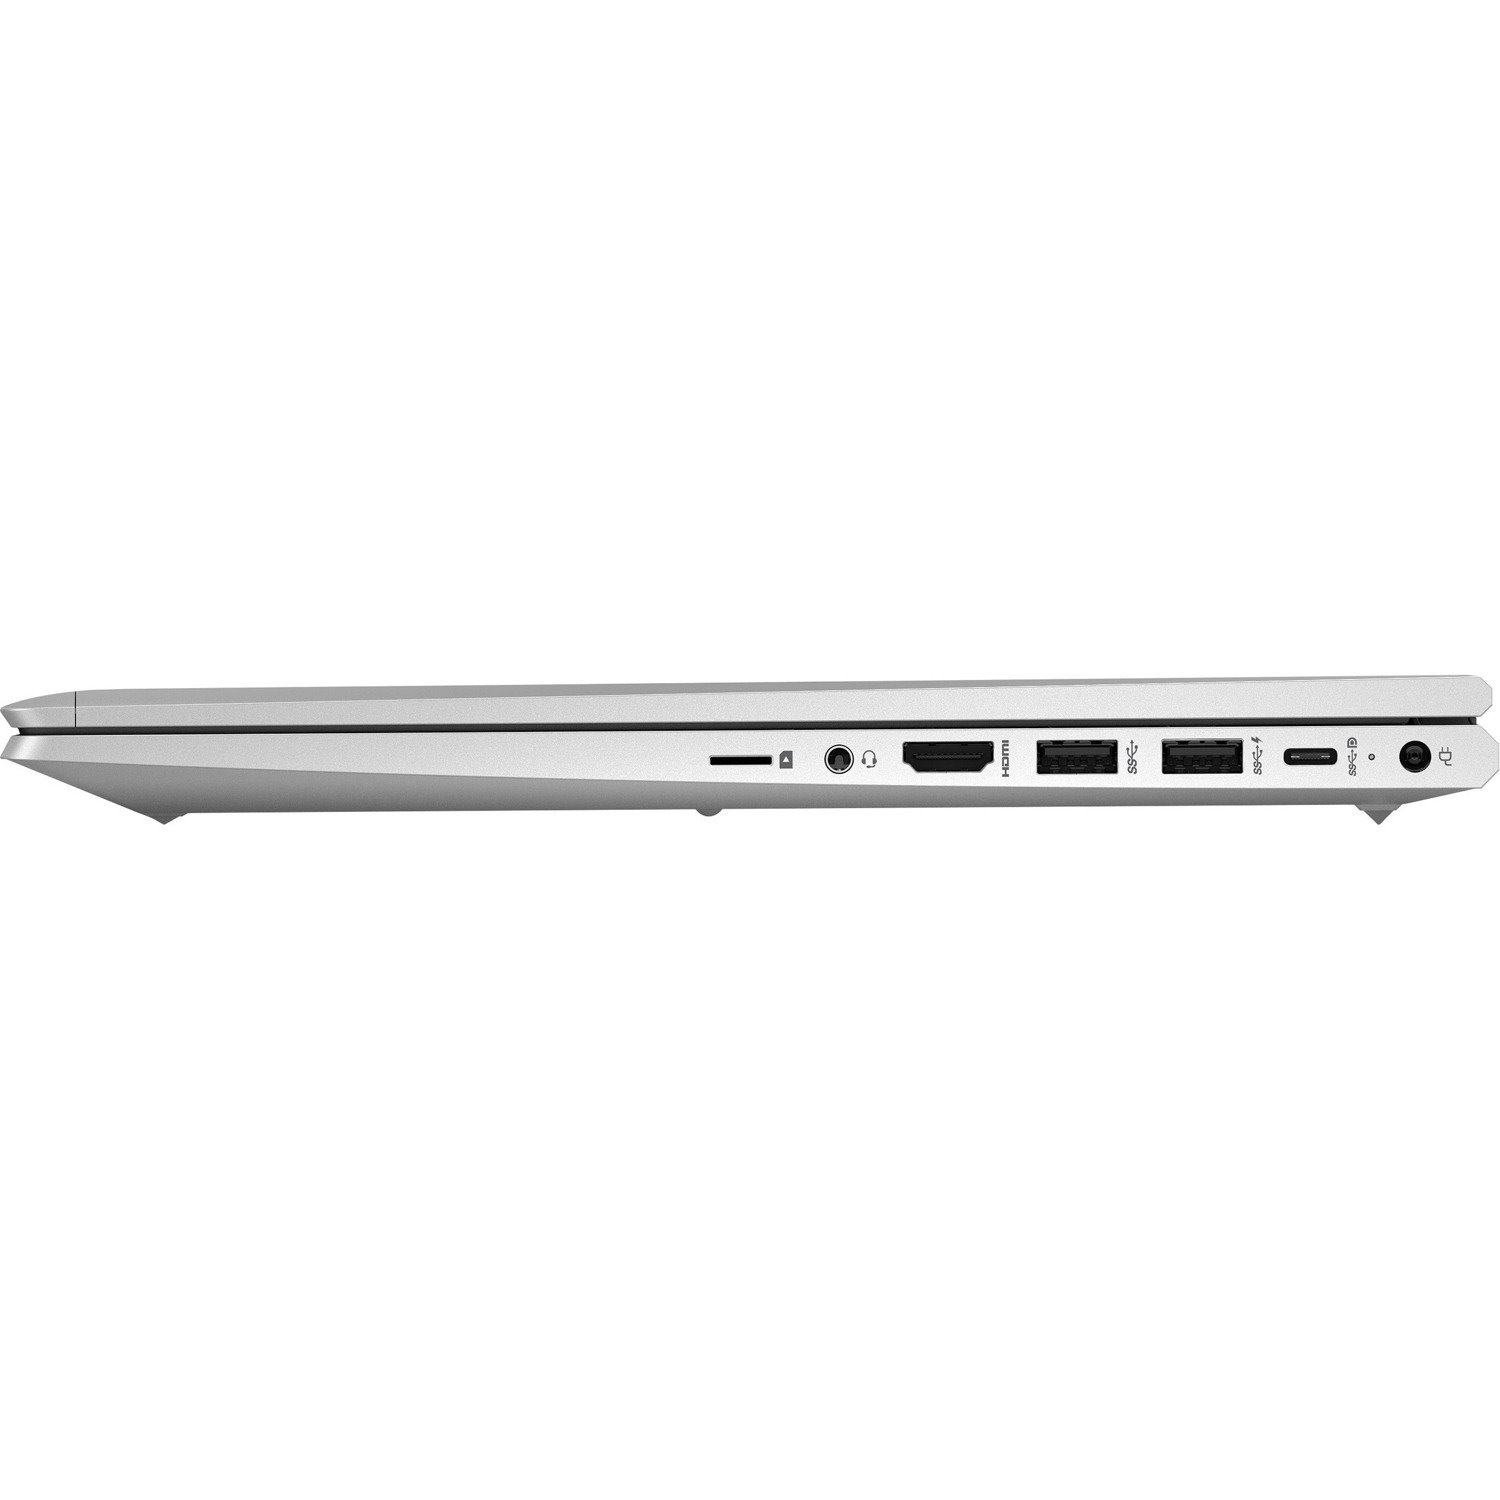 HP ProBook 650 G8 LTE Advanced, UMTS, DC-HSPA+, HSPA+ 15.6" Notebook - Full HD - 1920 x 1080 - Intel Core i5 11th Gen i5-1145G7 Quad-core (4 Core) - 8 GB Total RAM - 256 GB SSD